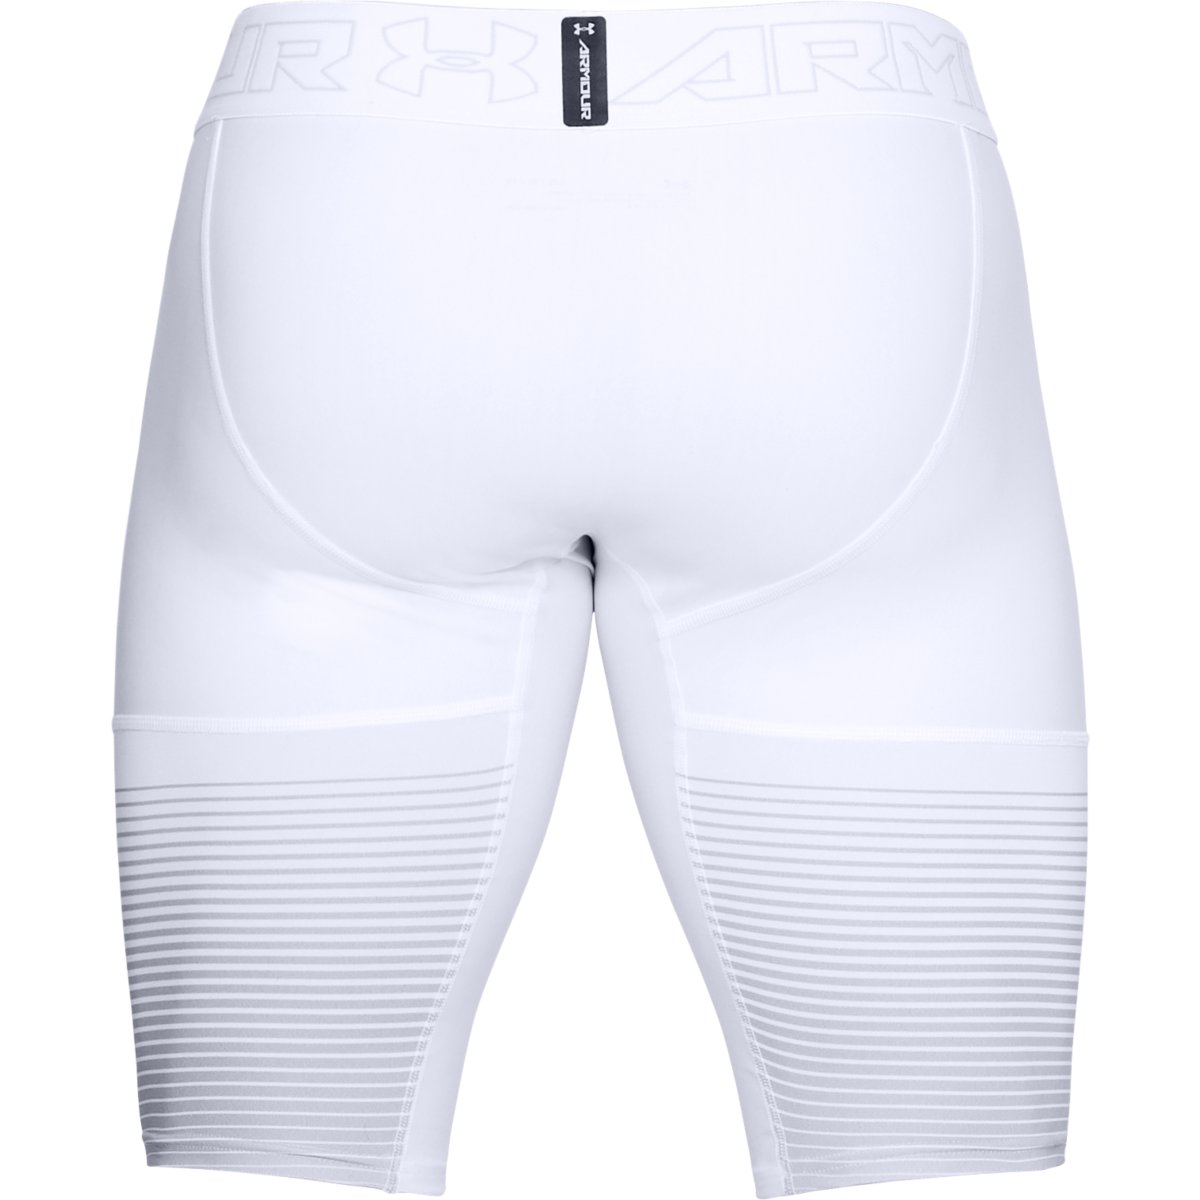 Men’s compression shorts